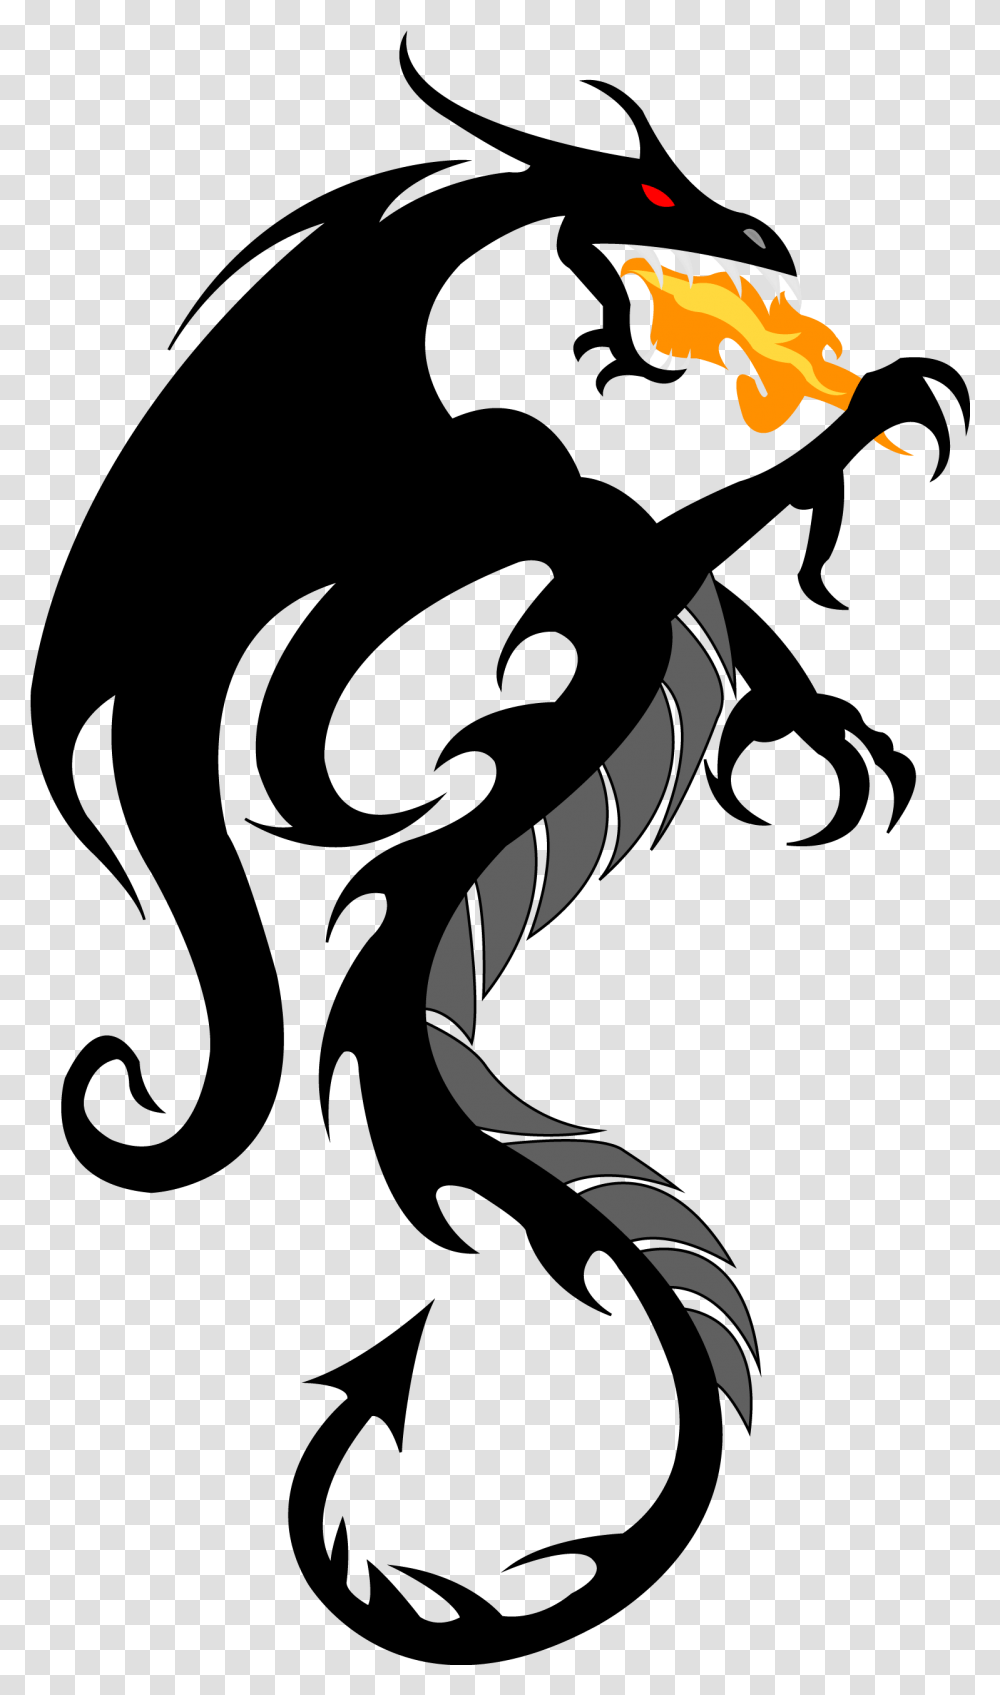 Black Dragon Pics Hd, Symbol, Arrow, Emblem, Stencil Transparent Png